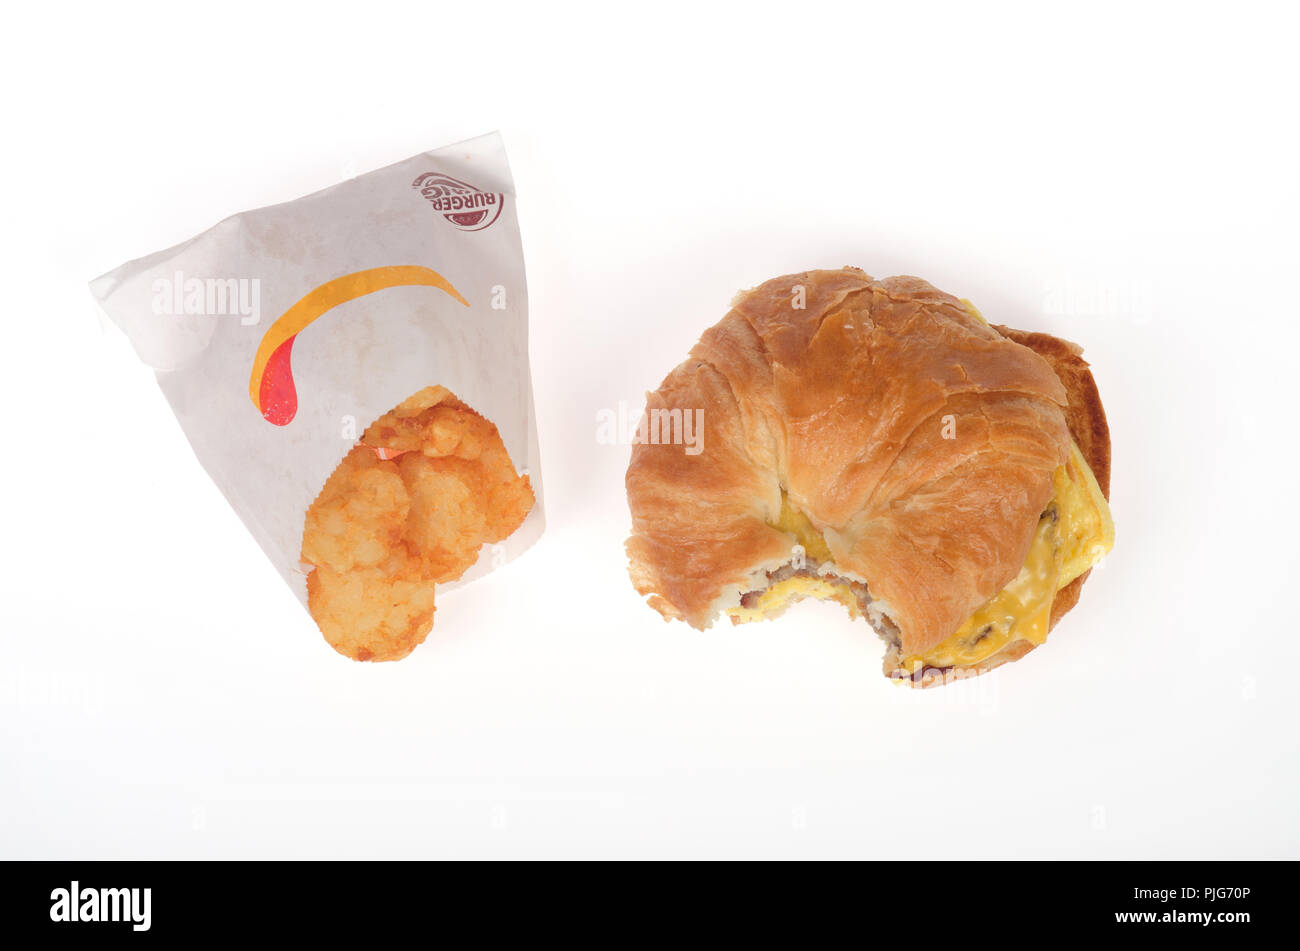 Burger King Würstchen, Eier und Käse croissan', oder Croissant Sandwich mit Hash Brown Kartoffeln Paket Stockfoto